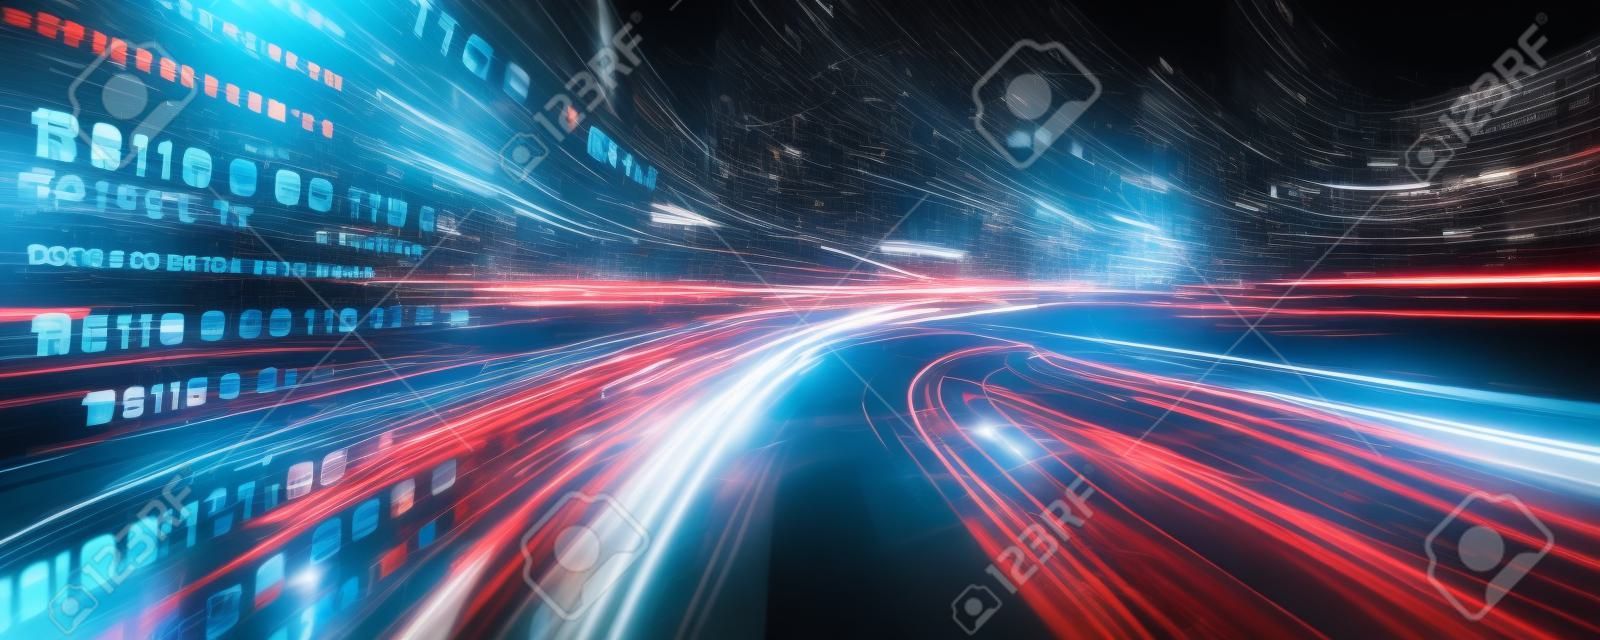 Flux de données numériques sur route avec flou de mouvement pour créer une vision de transfert de vitesse rapide. Concept de transformation numérique future , innovation perturbatrice et méthodologie d'entreprise agile .